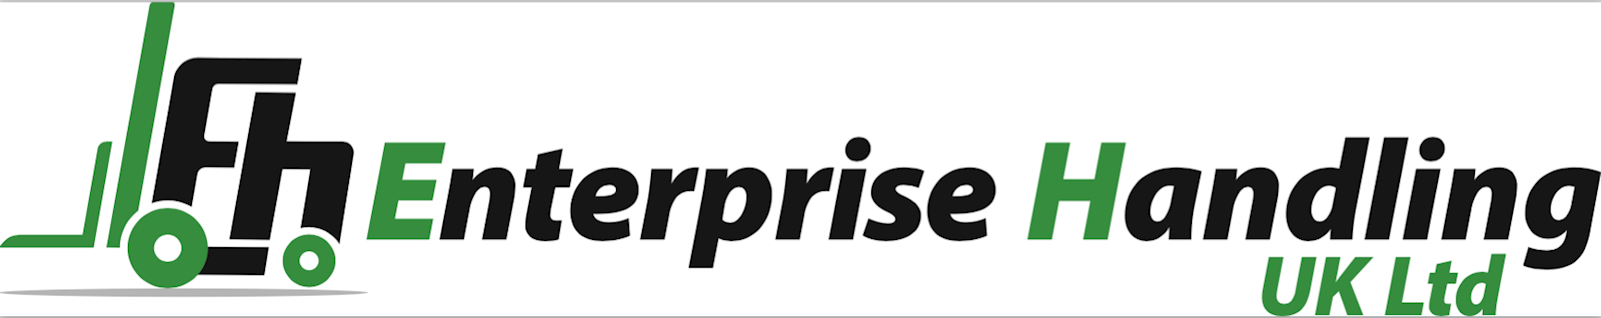 Enterprise Handling UK Ltd